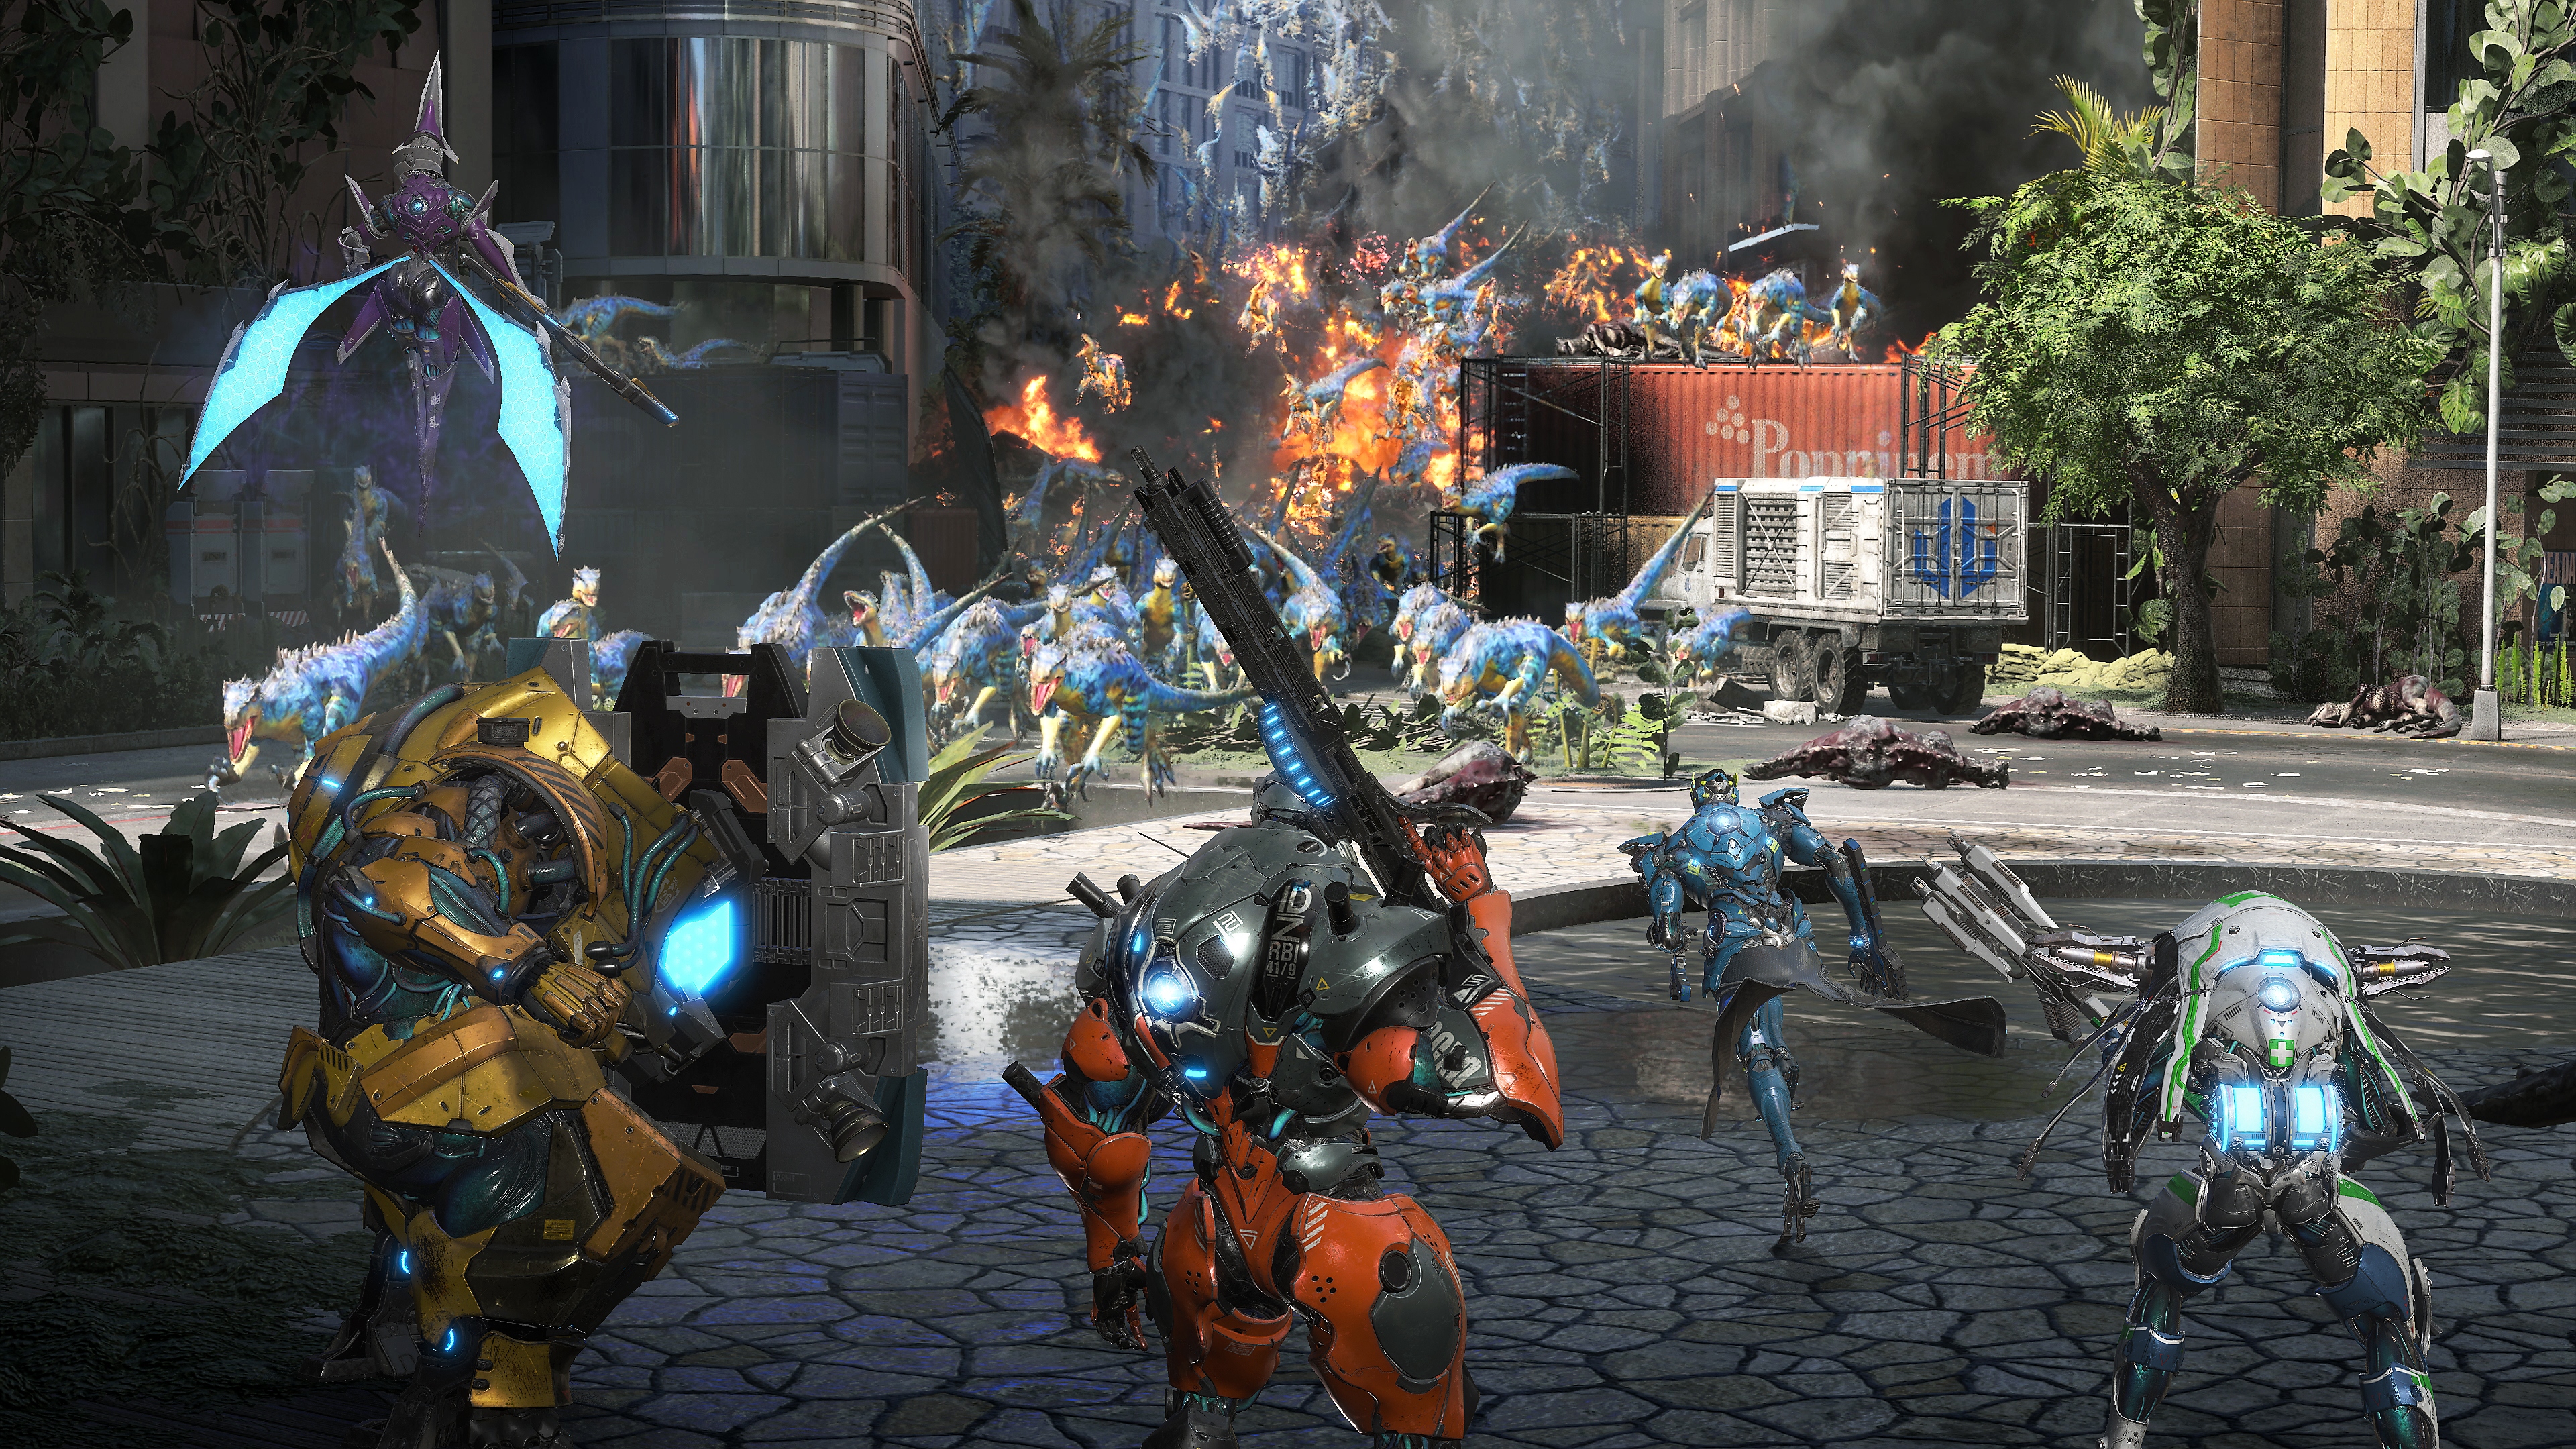 Screenshot van Exoprimal met daarop dino's die naar personages rennen die dreigen met wapens en schilden.